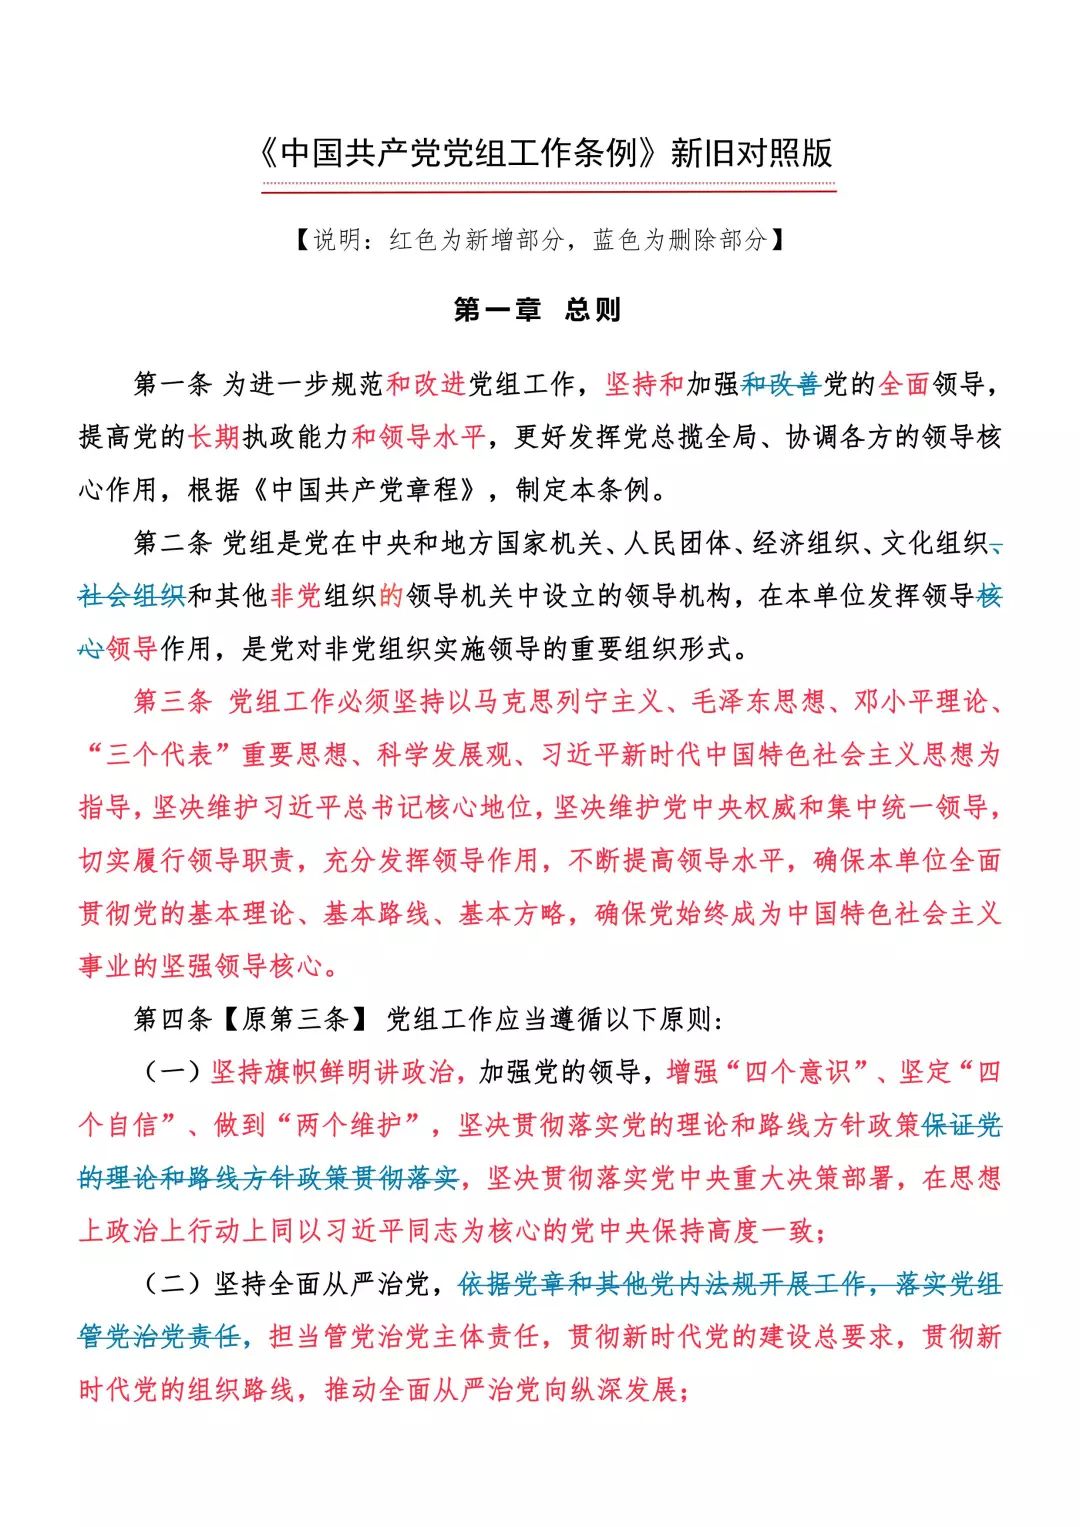 【聚焦】《中国共产党党组工作条例》新旧